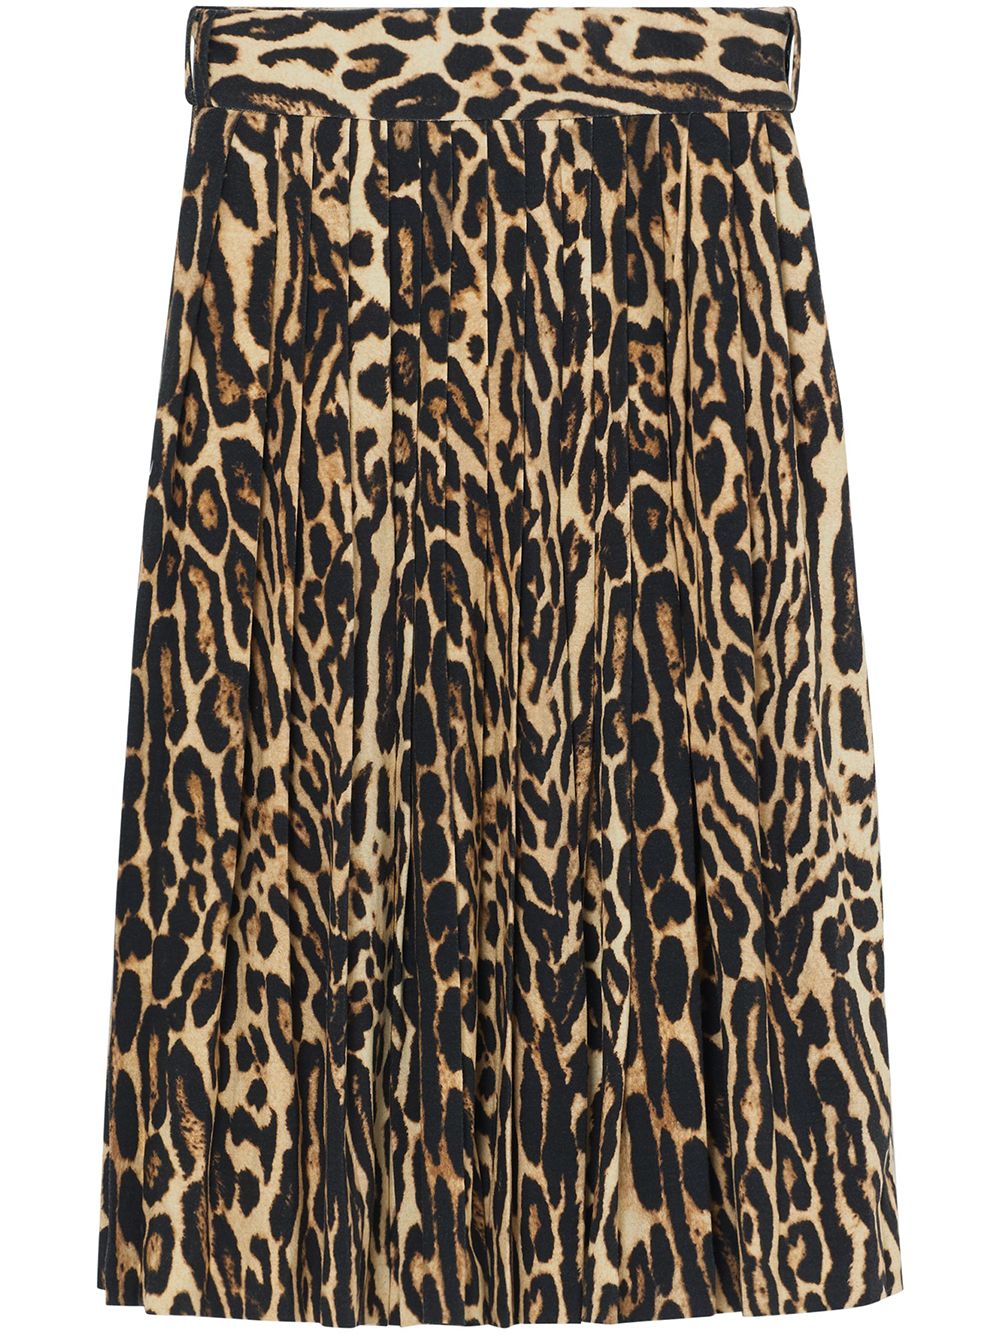 фото Burberry леопардовая юбка со складками